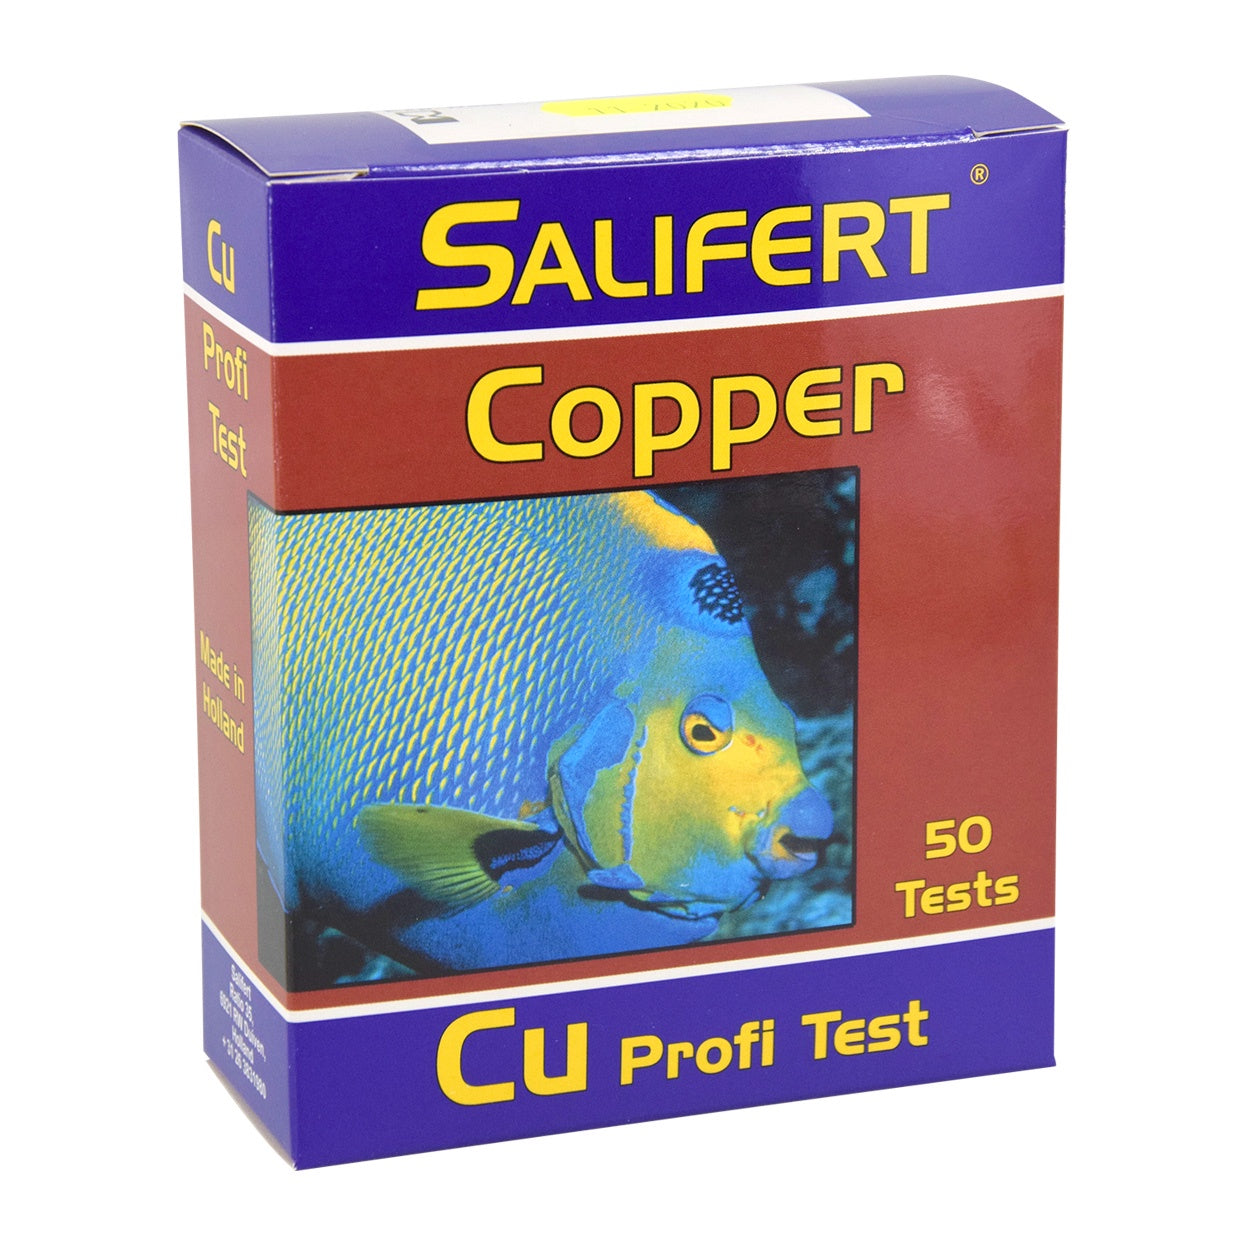 Cu (Copper) Profi-Test